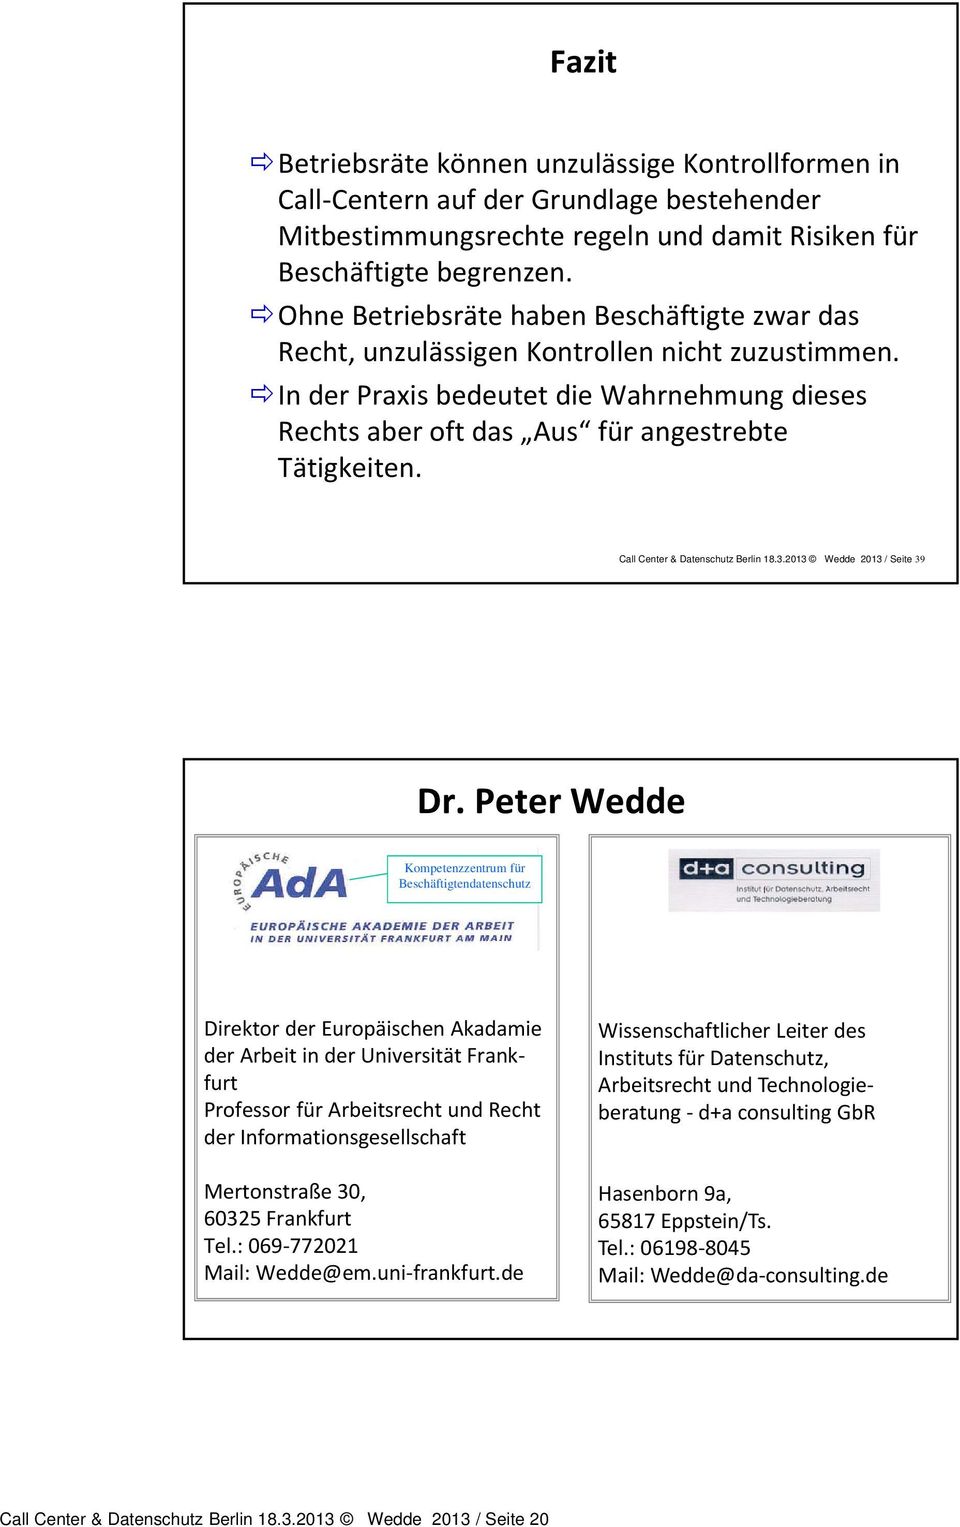 Call Center & Datenschutz Berlin 18.3.2013 Wedde 2013 / Seite 39 Dr.